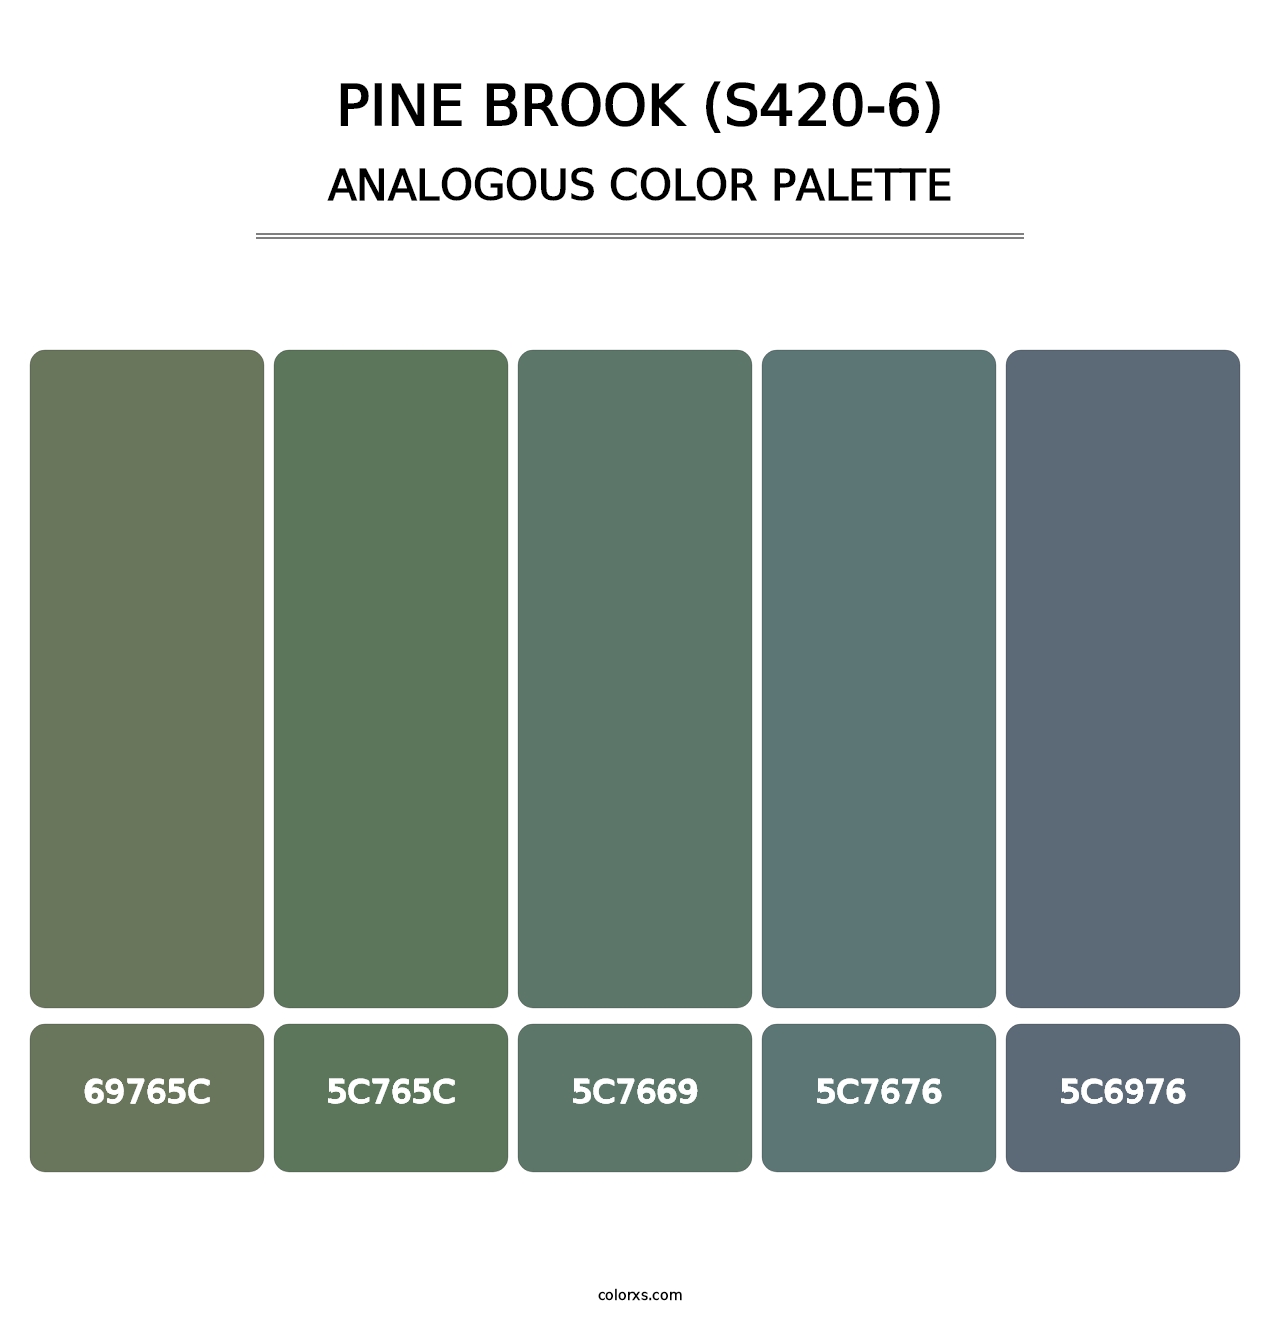 Pine Brook (S420-6) - Analogous Color Palette